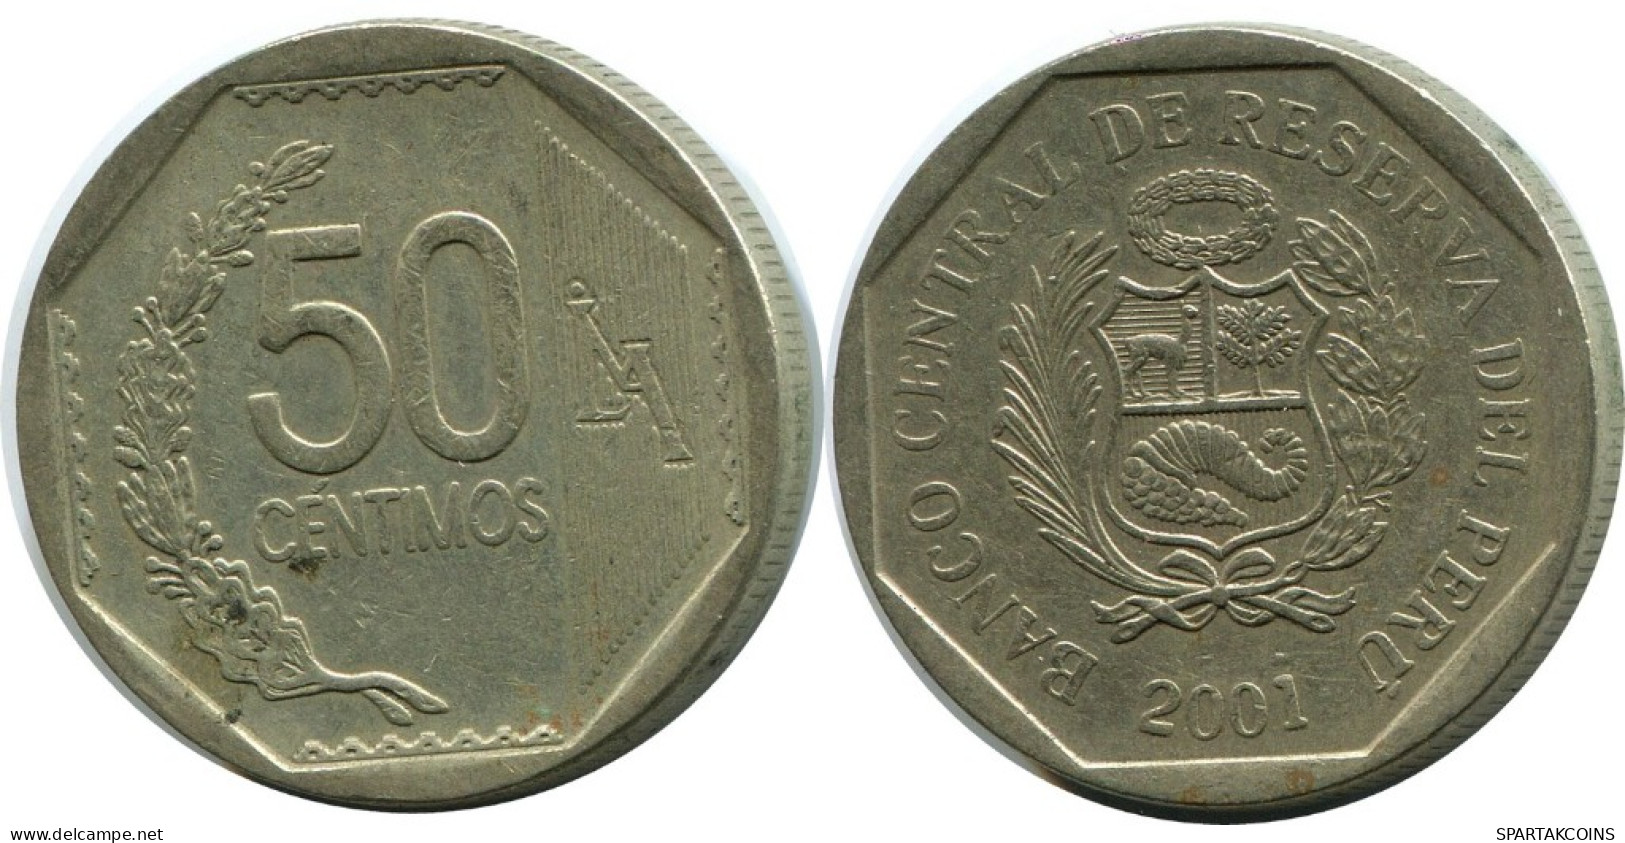 50 CENTIMOS 2001 PERU Coin #AH456.5.U.A - Peru